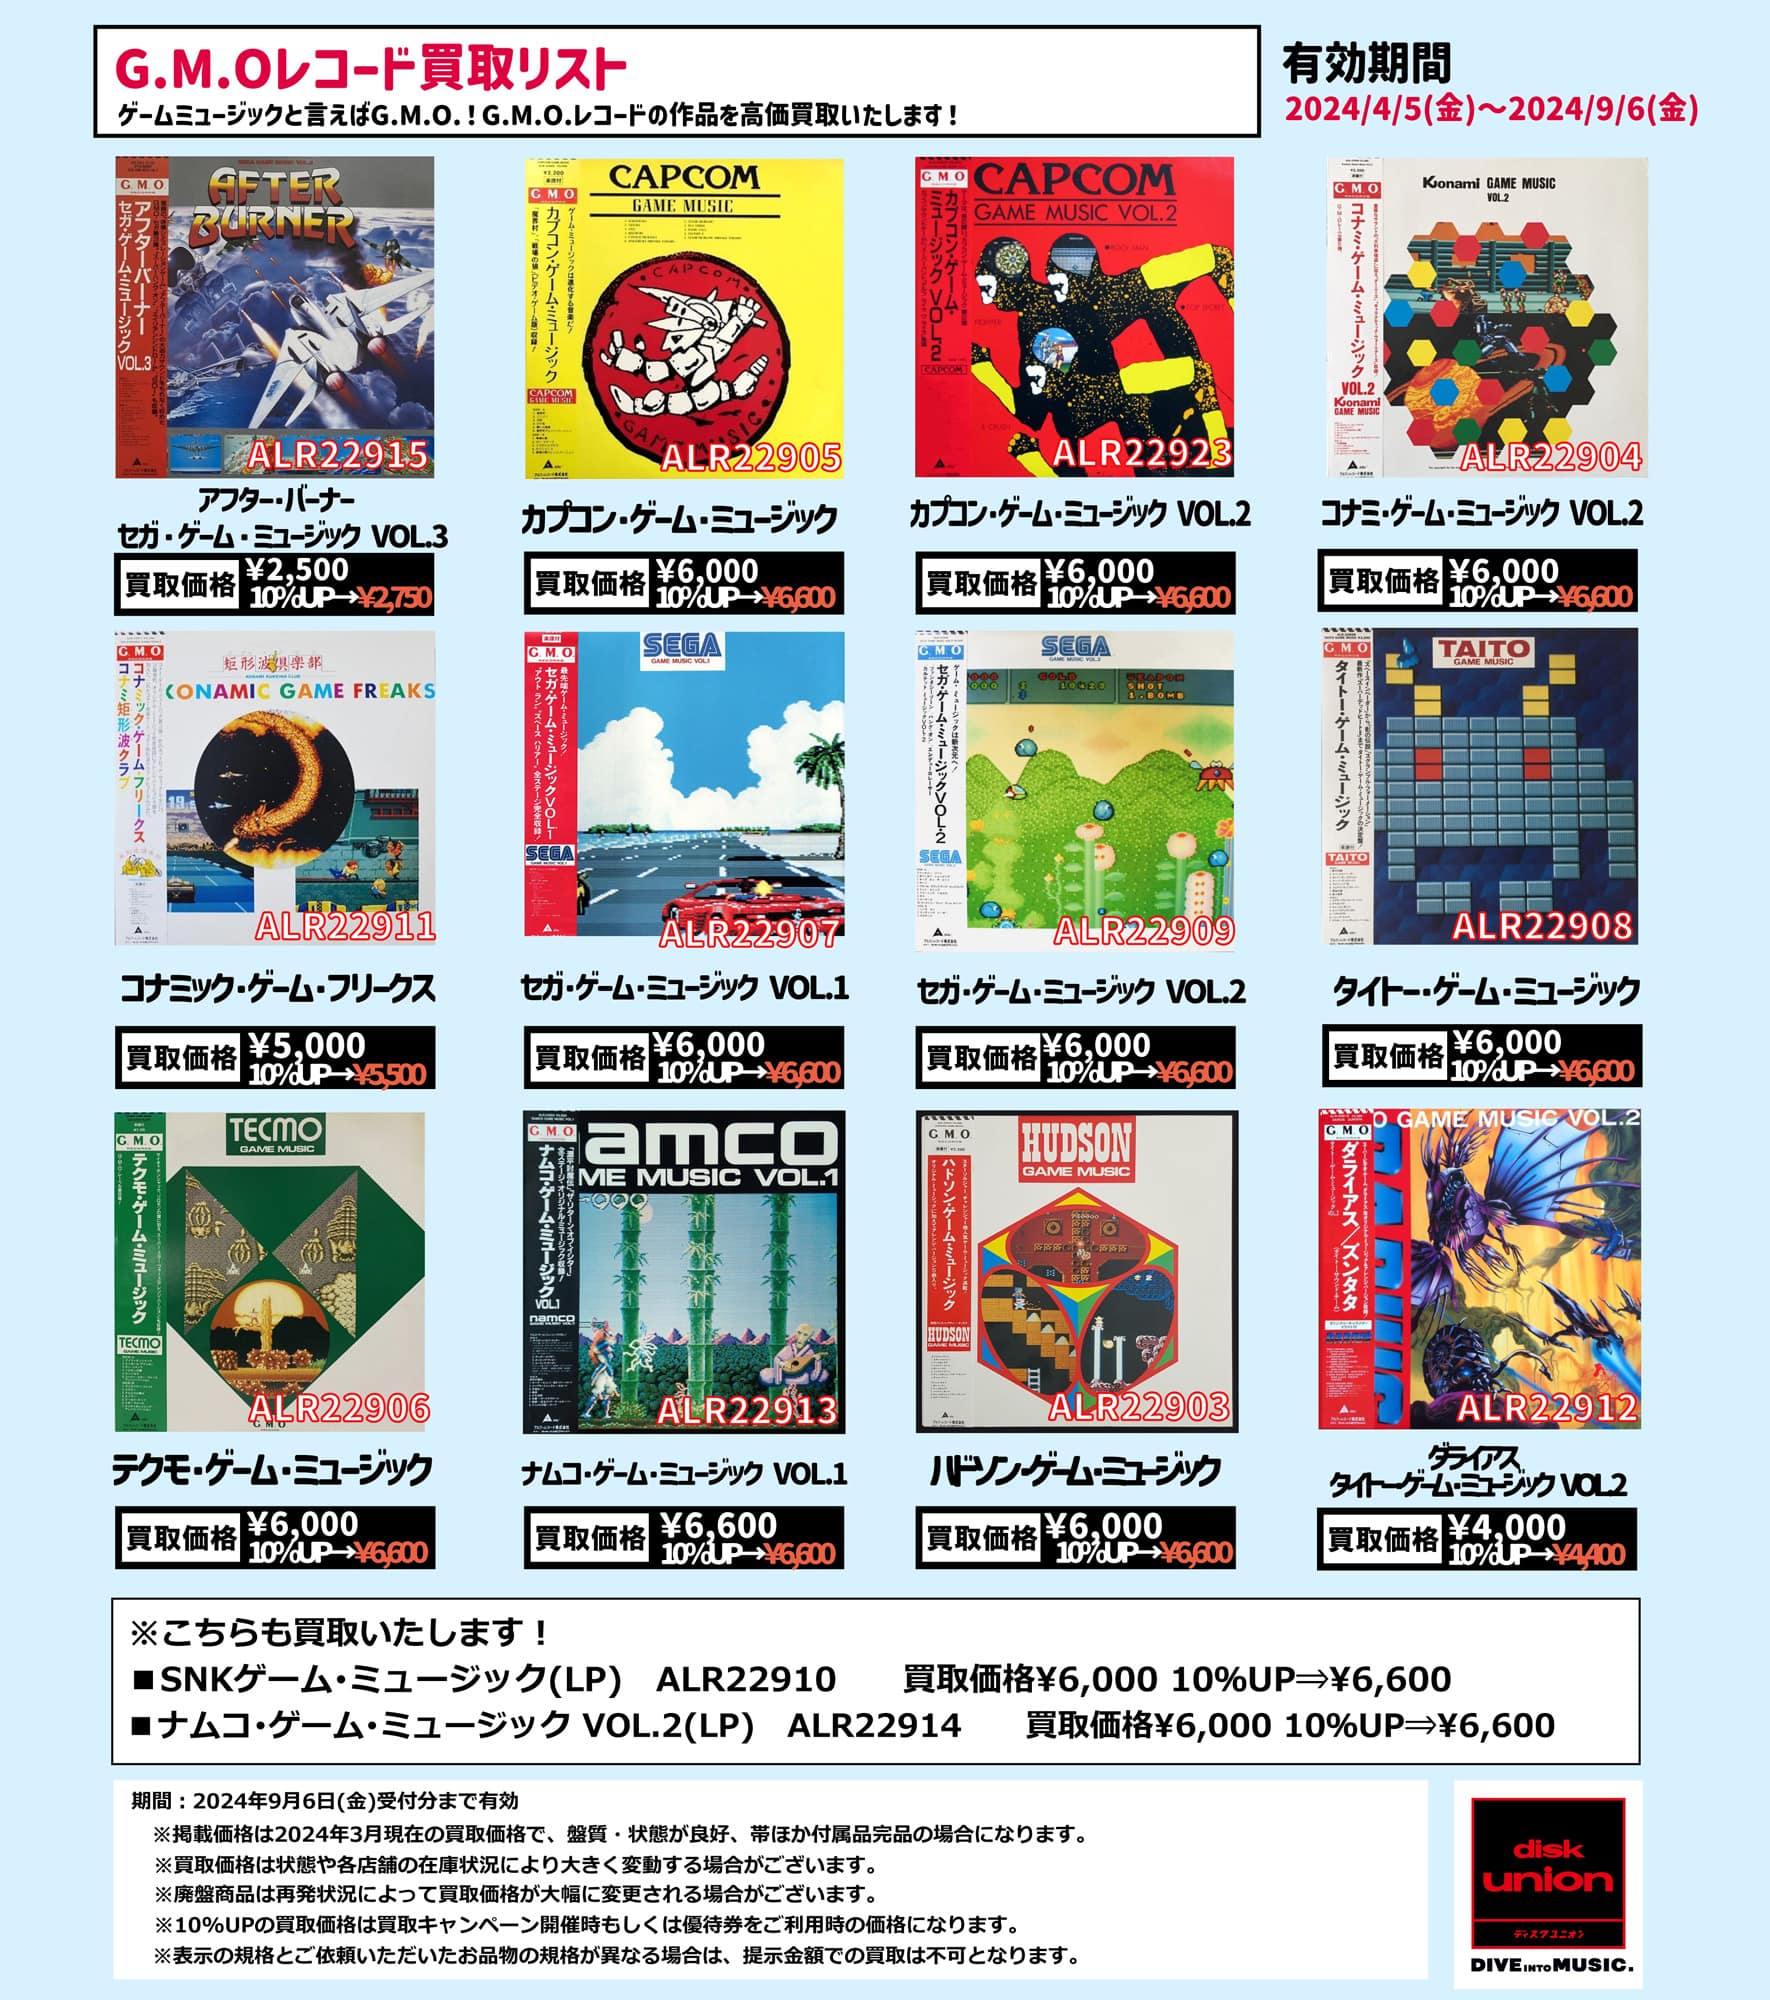 【ゲームミュージック】G.M.Oレコード買取リスト!